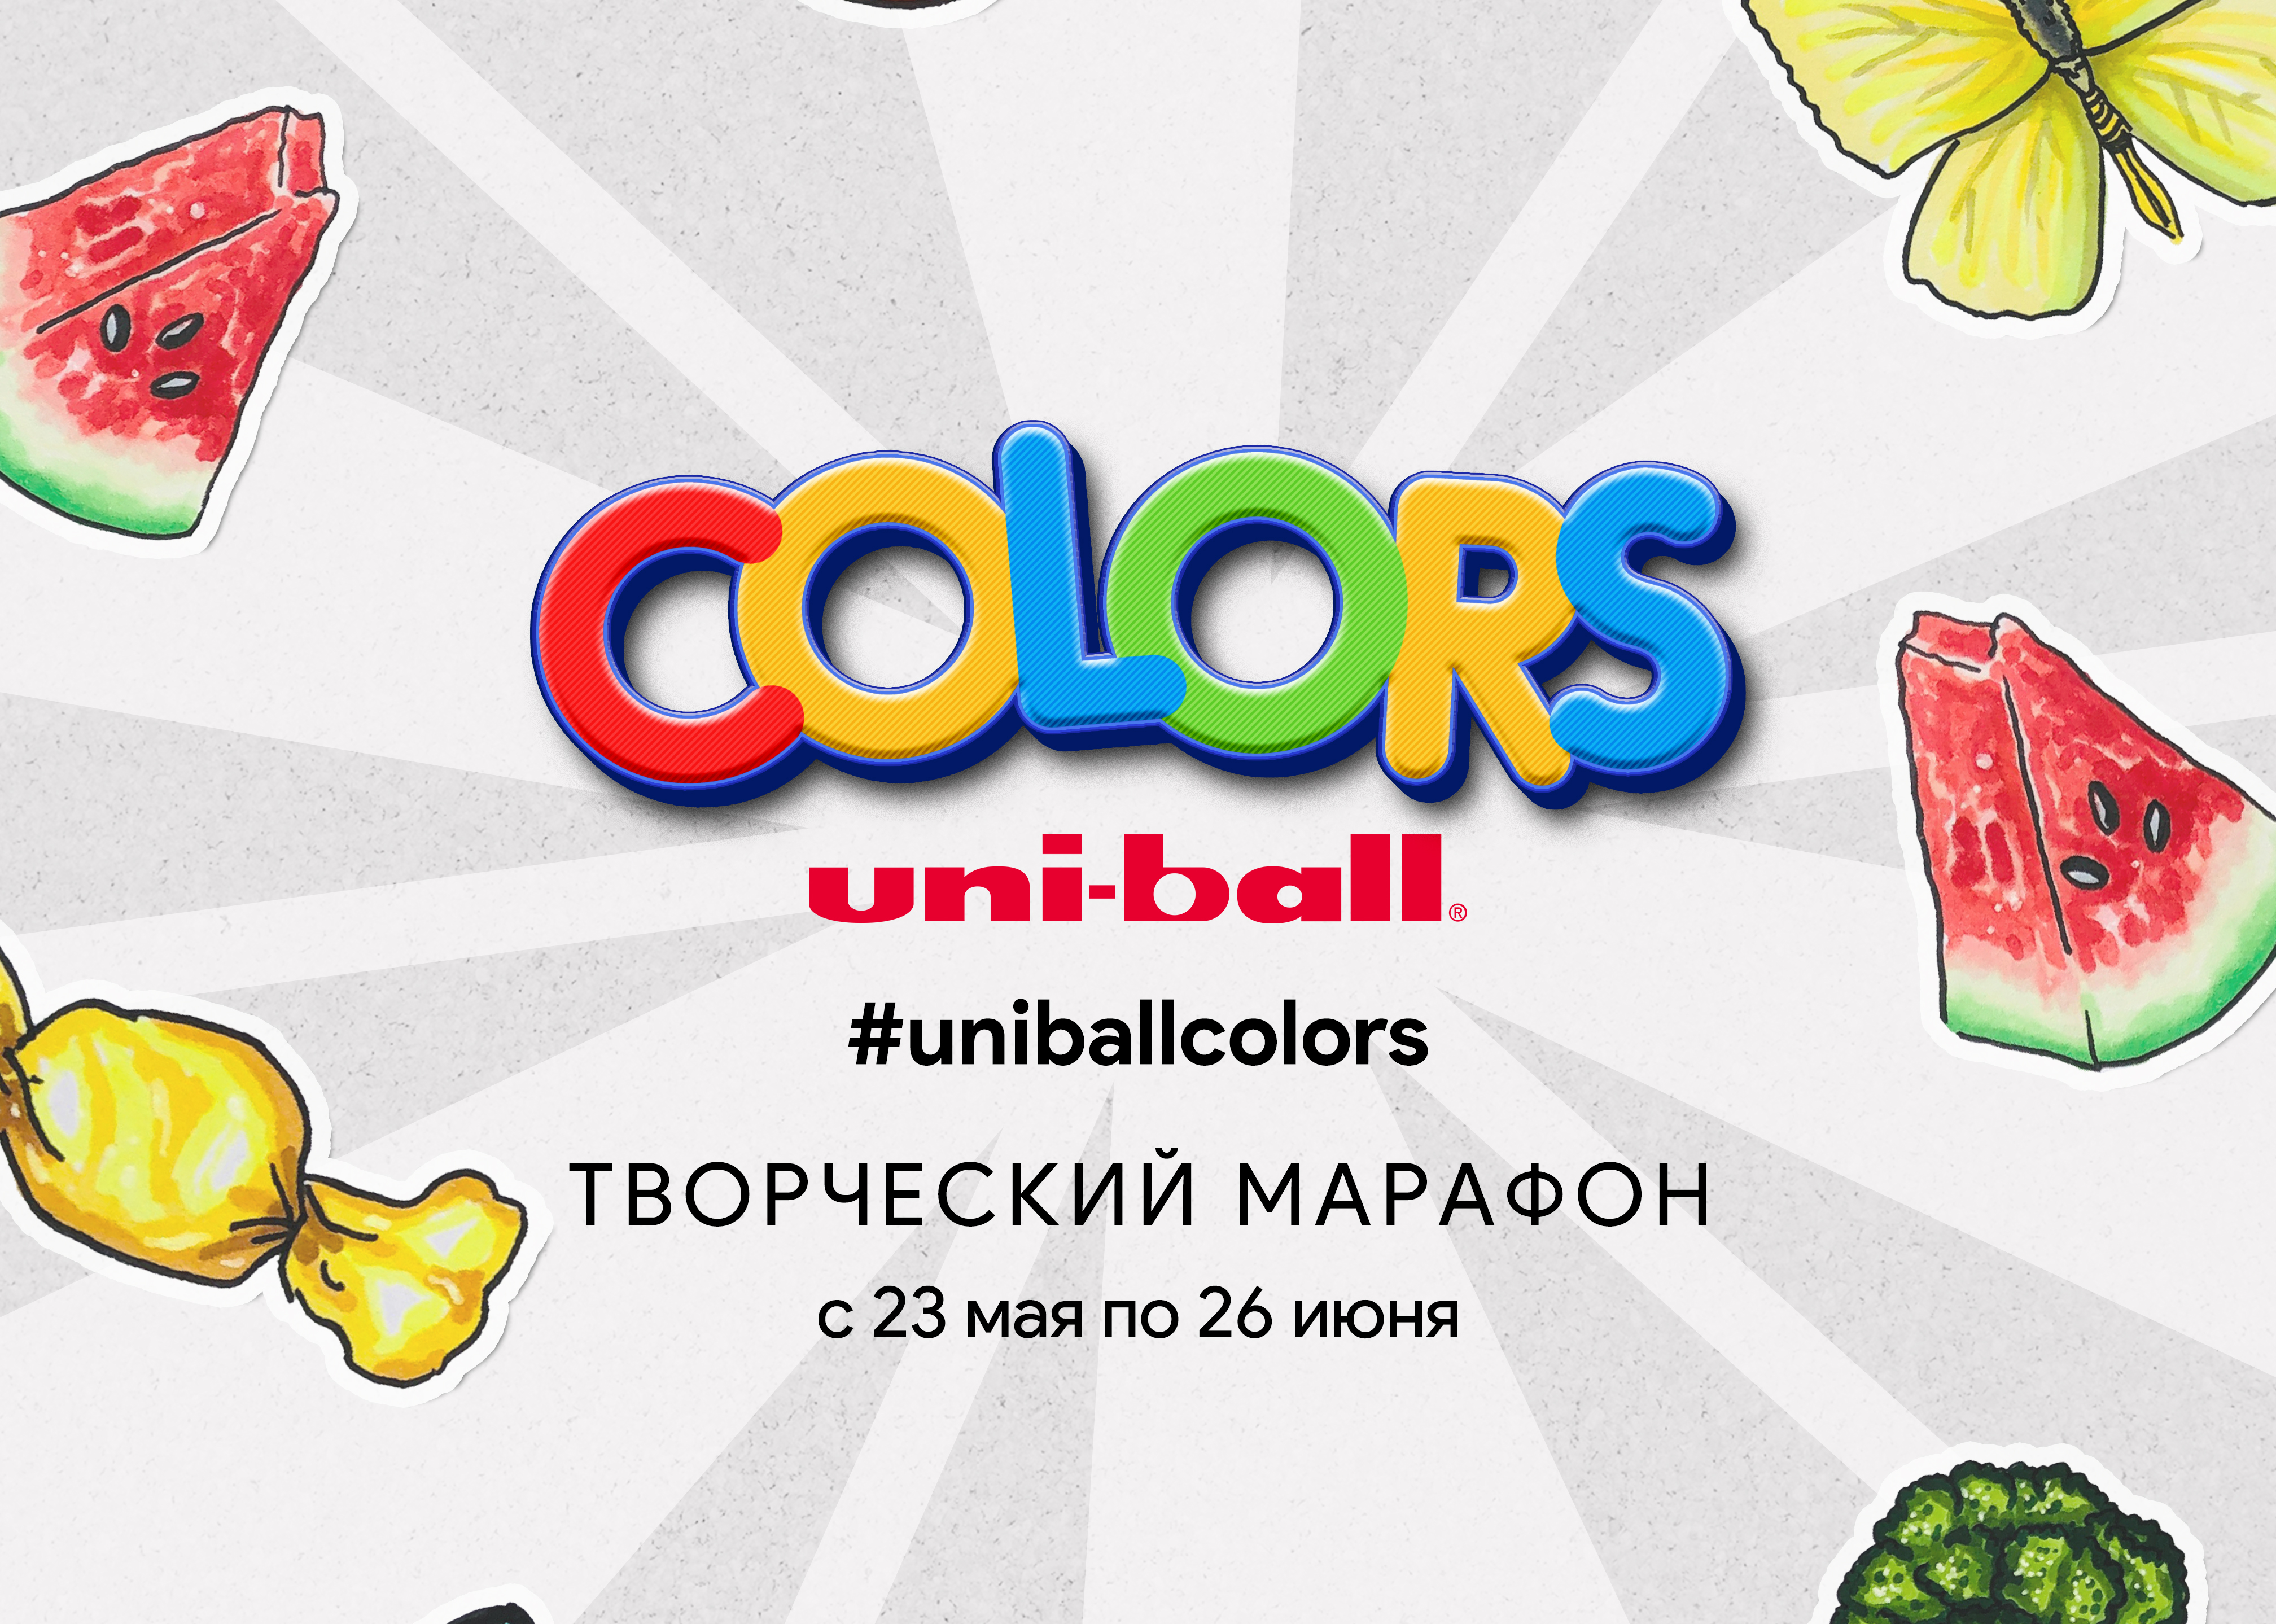 Творческий марафон Uniball Colors